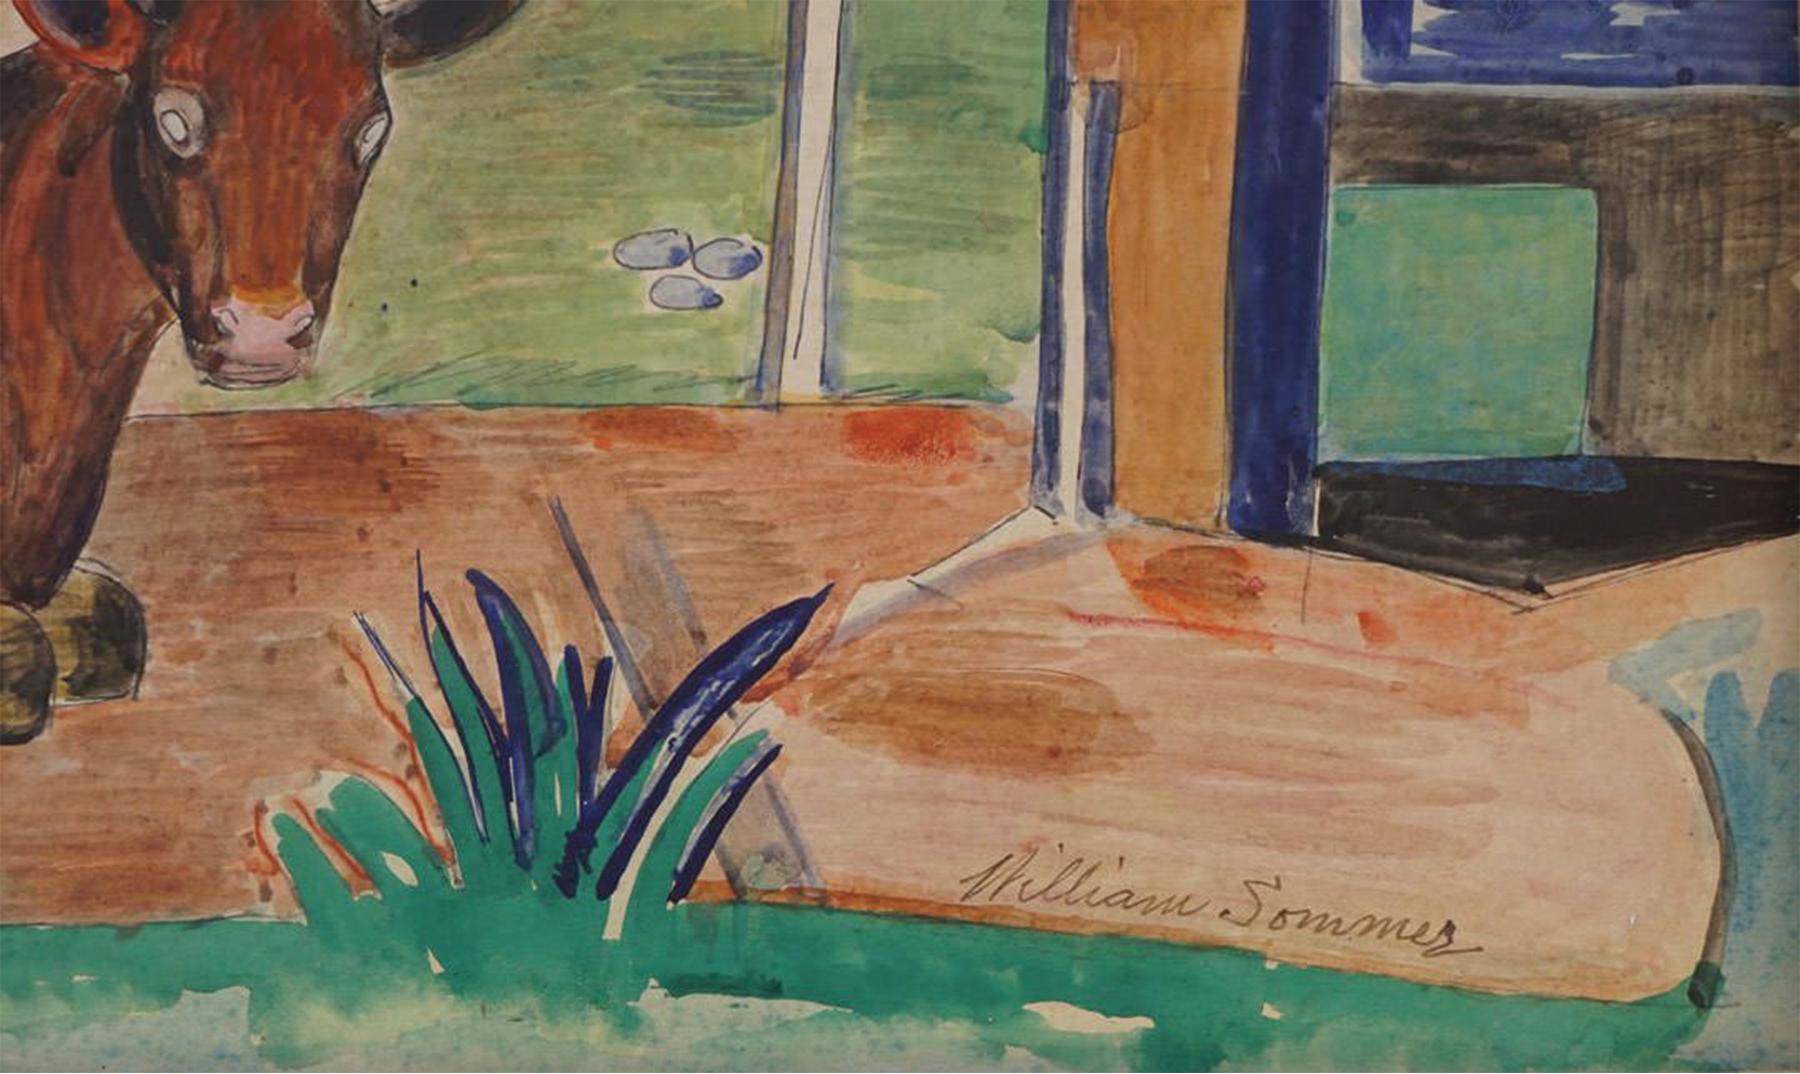 Modernistische Aquarelllandschaft mit Pferd, Cleveland School, Mid-Century Modern (Braun), Landscape Painting, von William Sommer